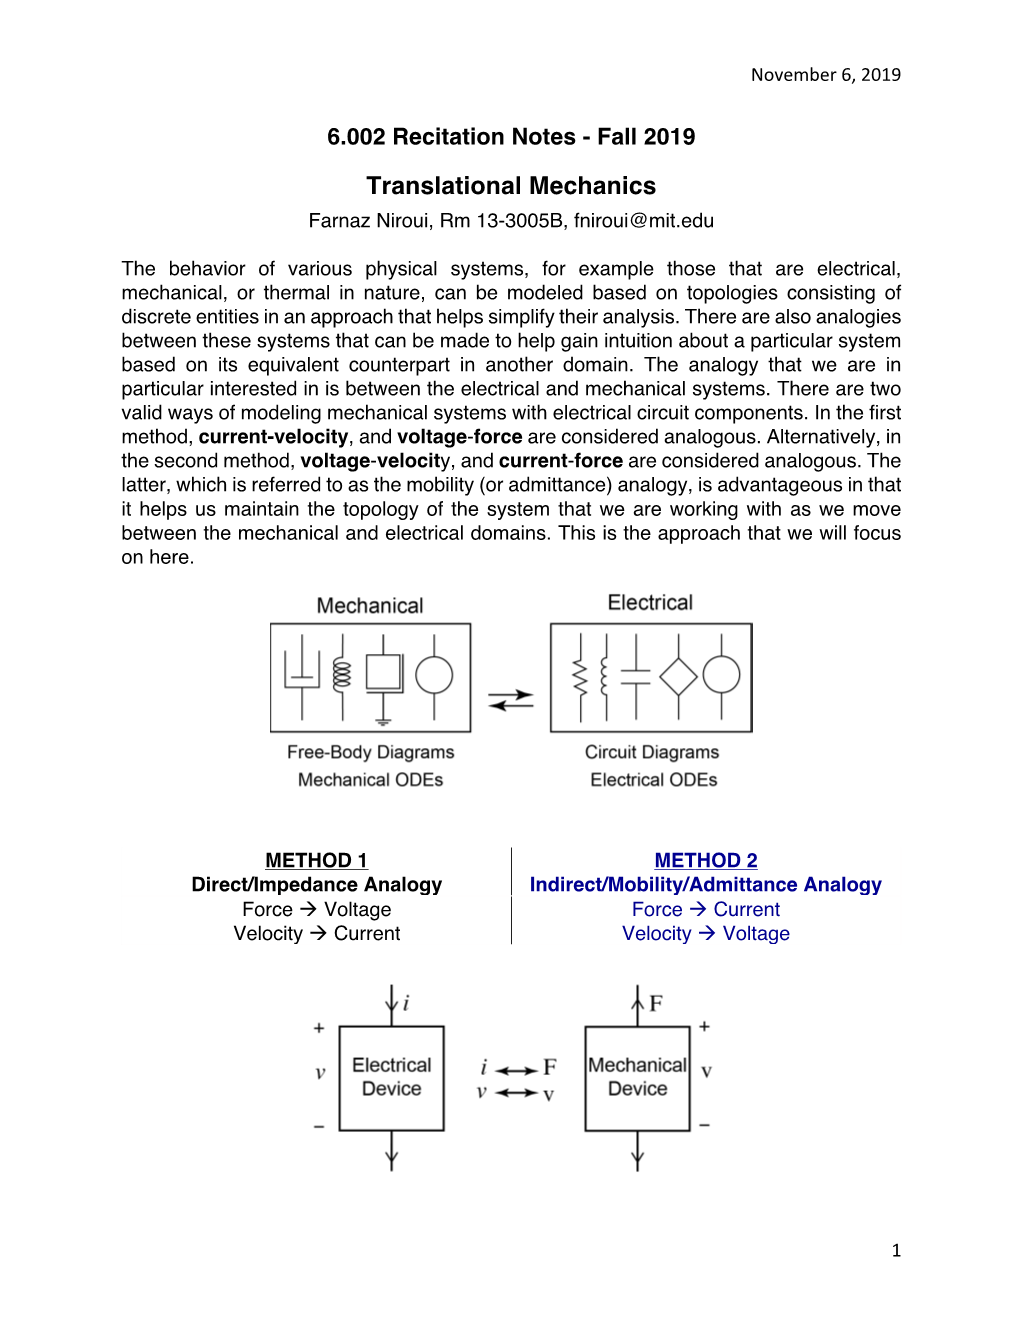 Translational Mechanics